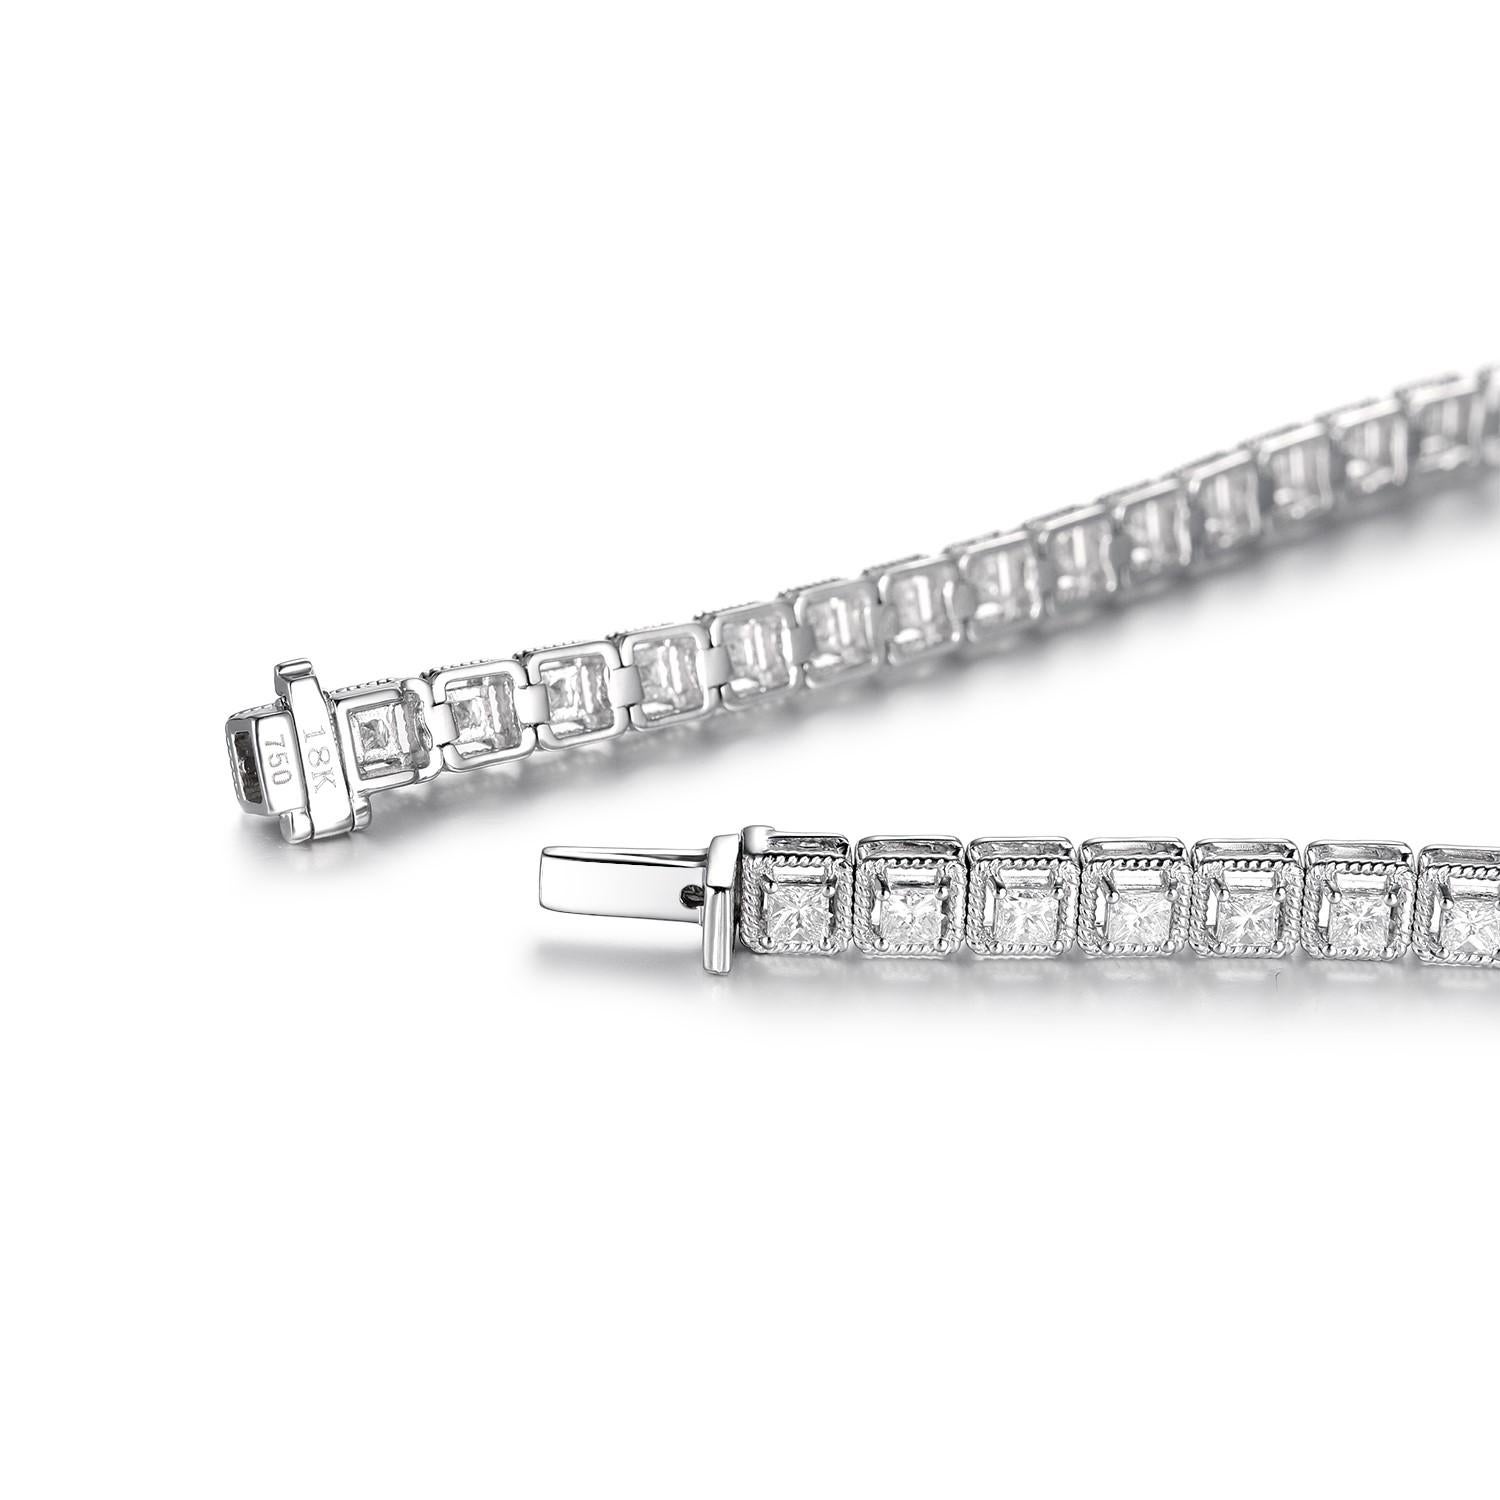 Dieses Tennisarmband besteht aus 2,14 Karat Diamanten im Prinzessinnenschliff. Die Diamanten sind in 18 Karat Gold gefasst. Der Rand des Armbands ist mit einer gedrehten Perlenfassung versehen.

Diamant im Prinzessinnenschliff 2,14 Karat
F-G Farbe